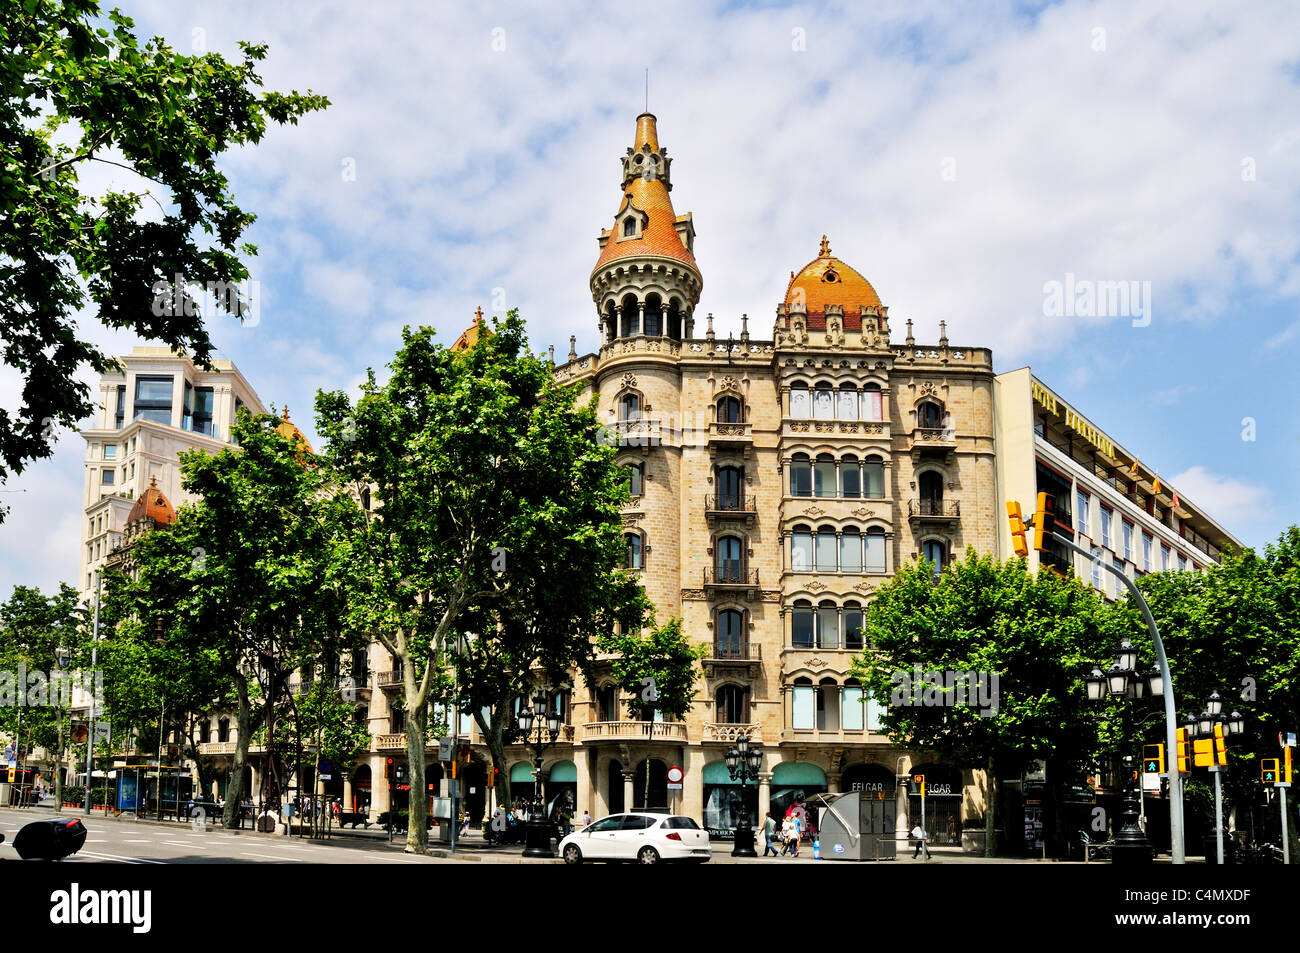 La tour rouge, dômes et balcons répartis sur 2 étages de l'architecture néo-gothique du cas Antoni Rocamora, Barcelone, Espagne Banque D'Images